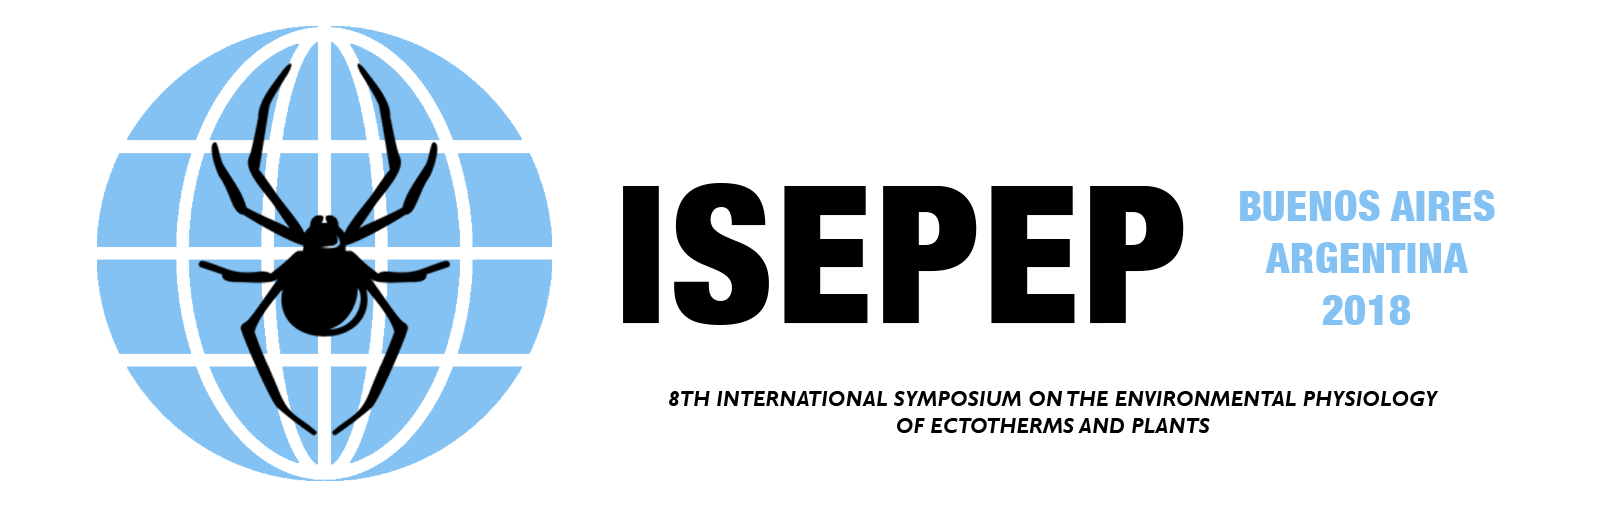  Logo Header Menu